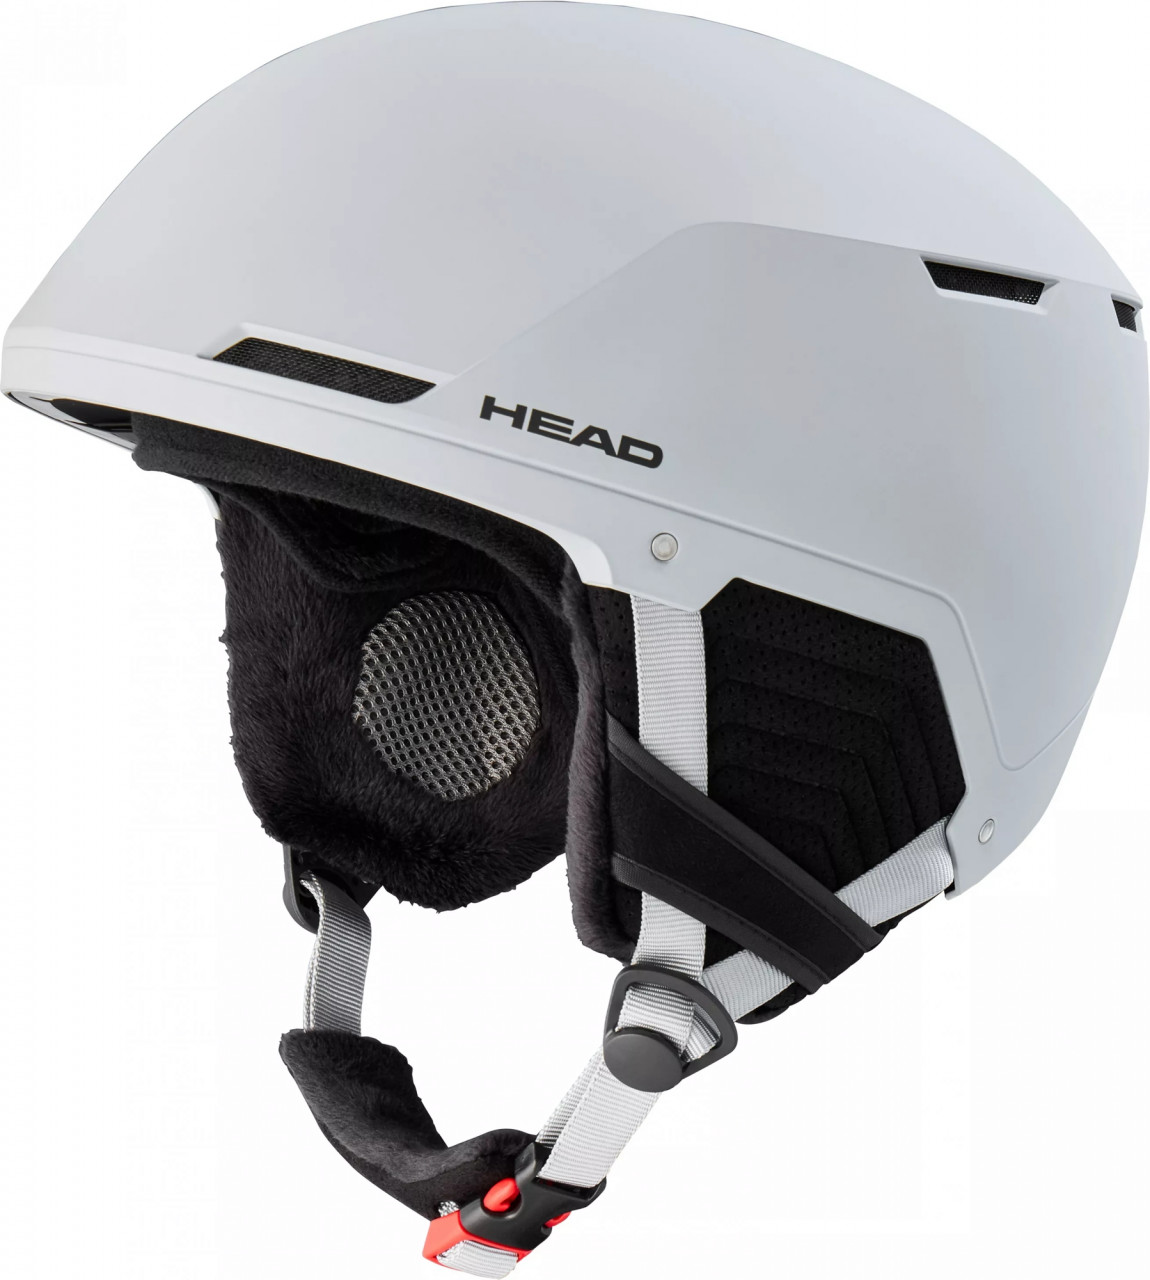 Горнолыжный шлем Head Compact Pro - 10590 руб.